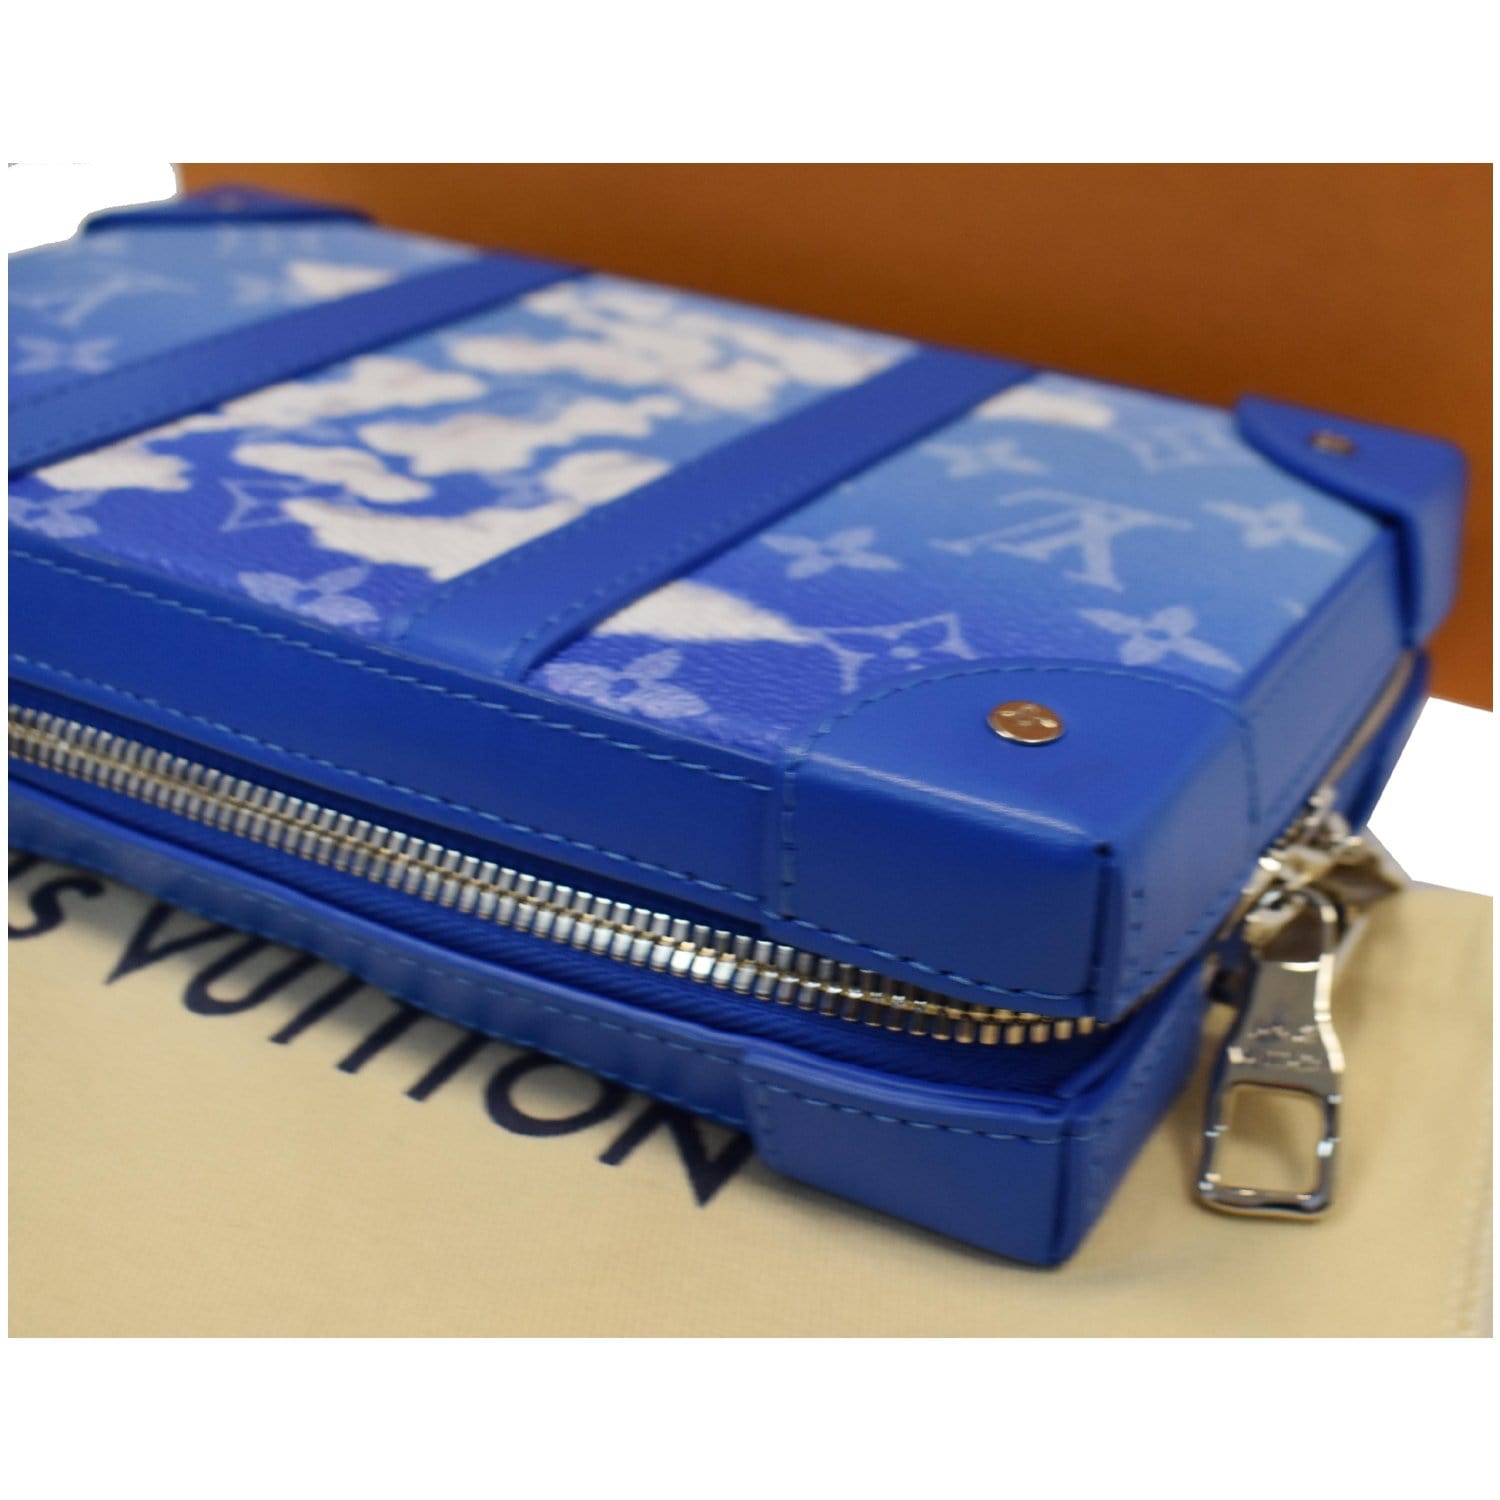 Louis Vuitton Soft Trunk Bag Limited Edition Monogram Clouds Blue 23112716